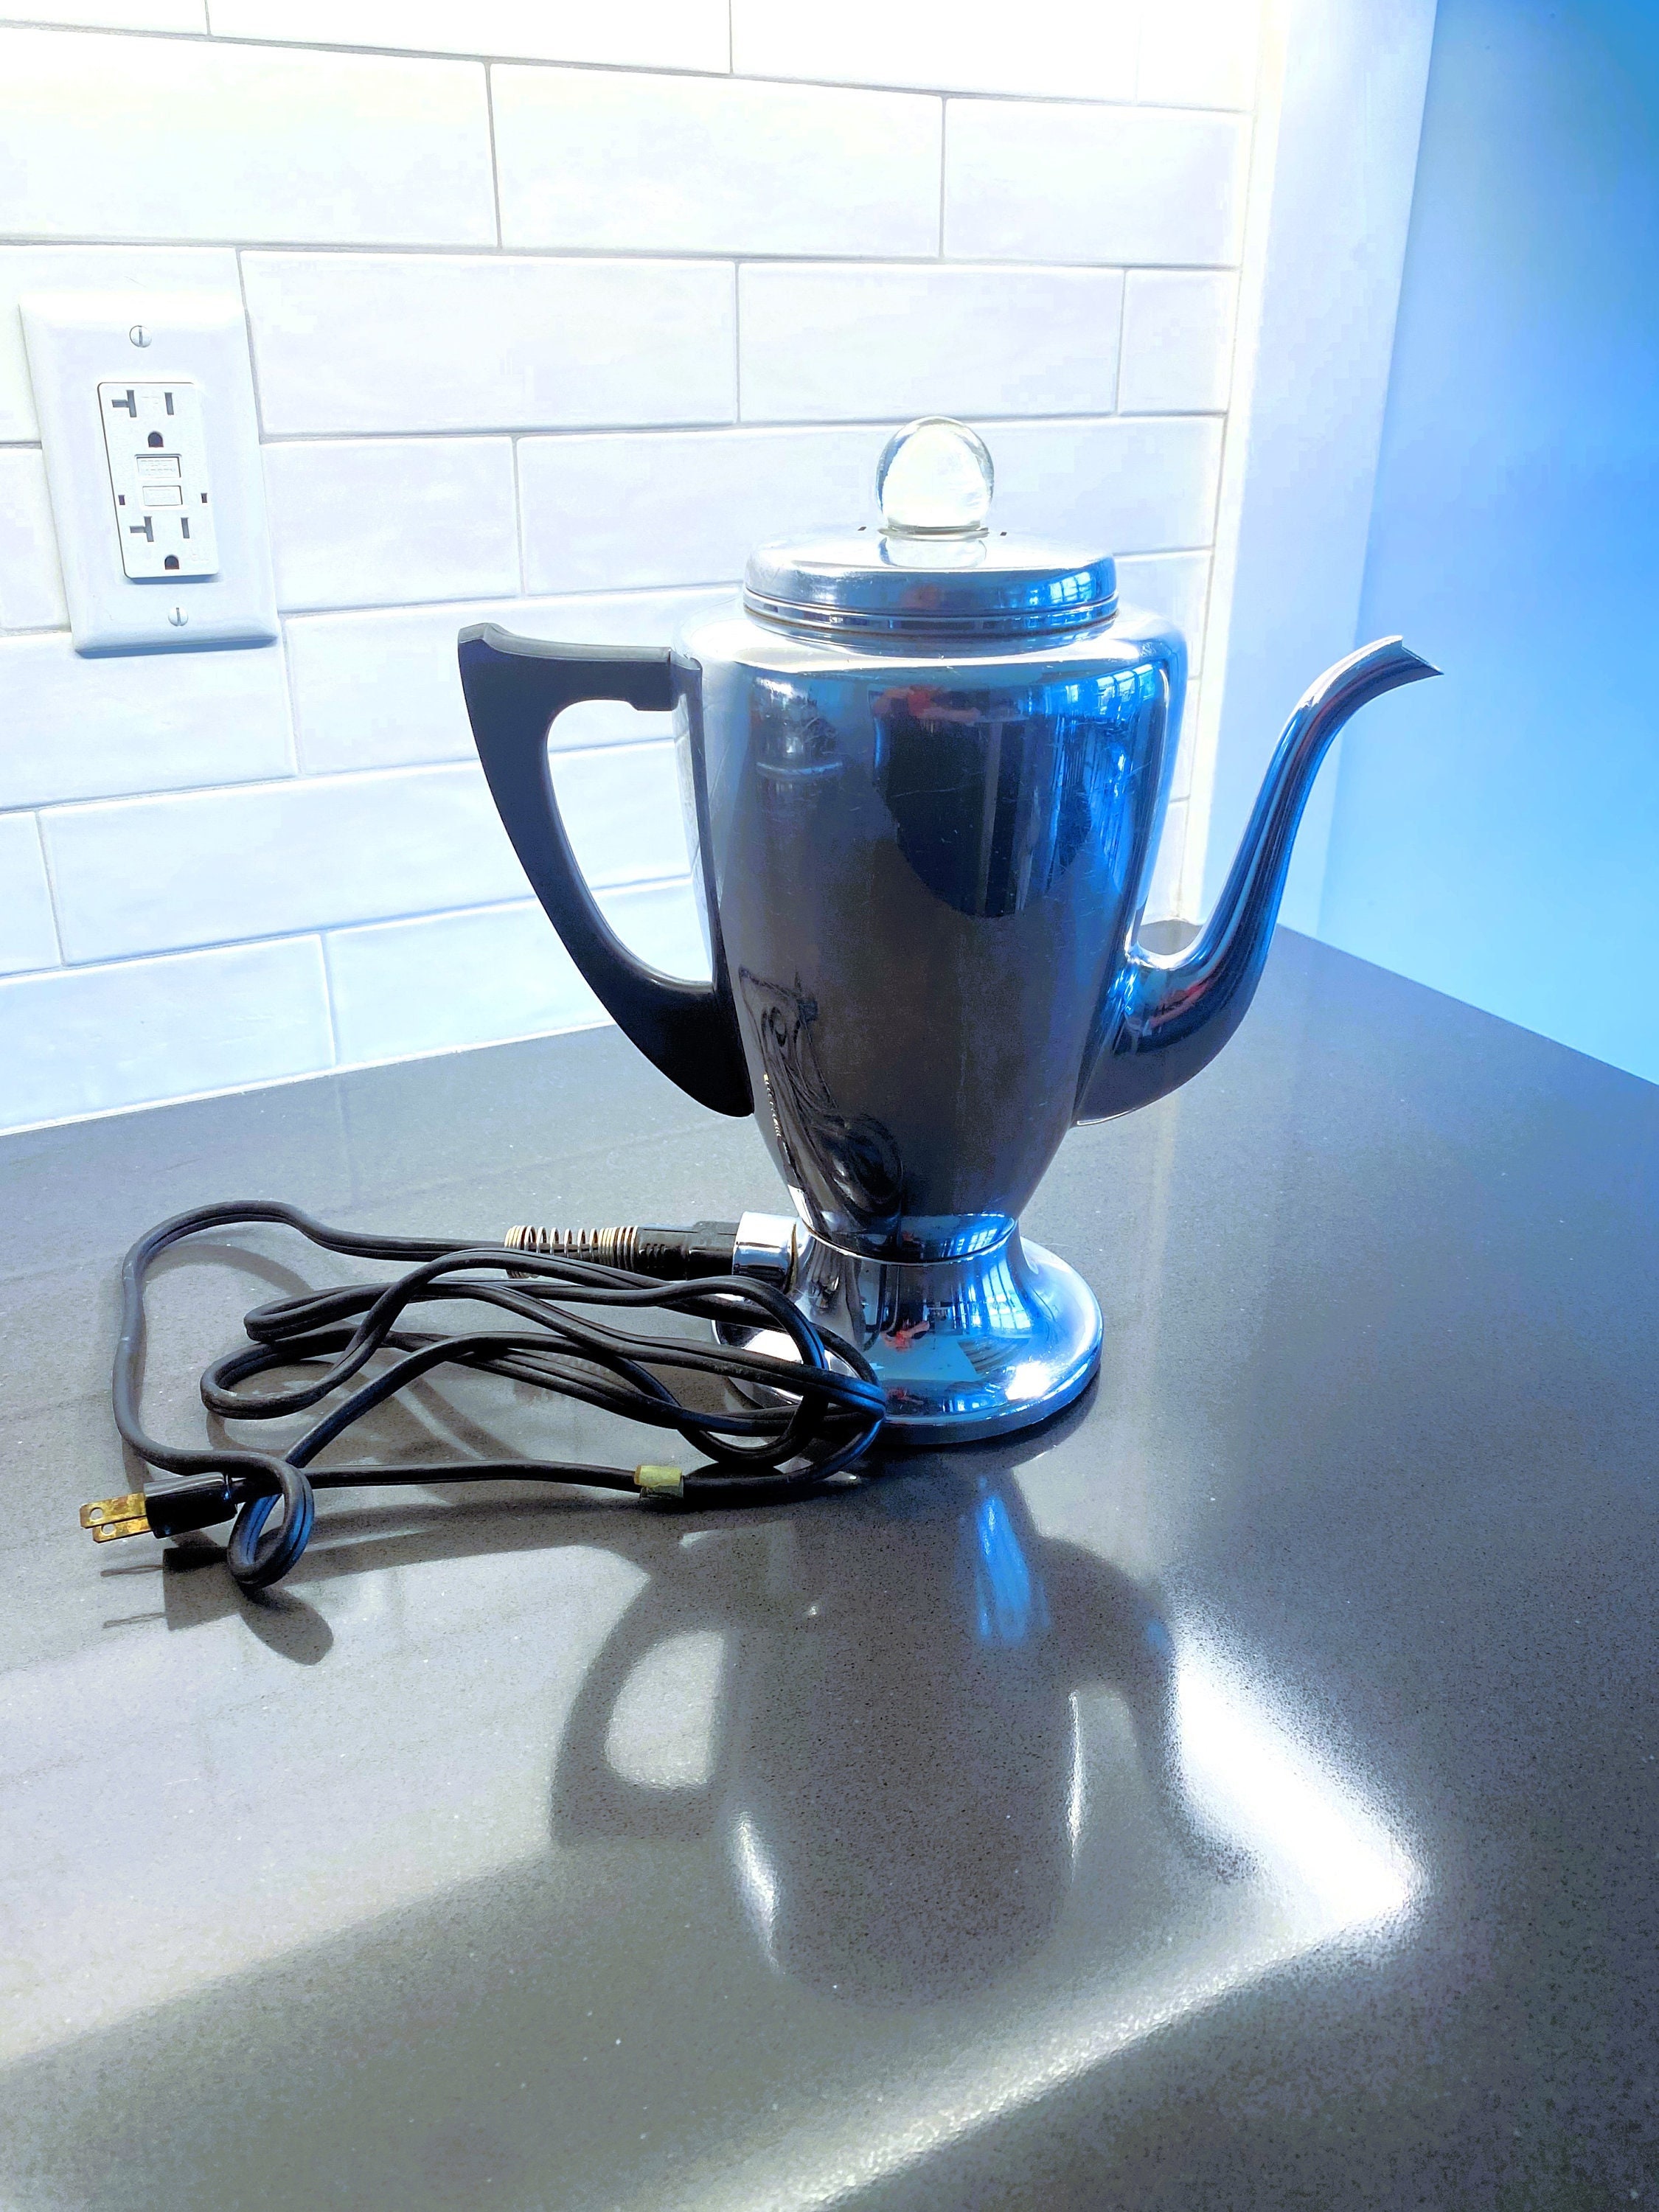 Mirro-matic Electric Percolator Coffee Pot Model 9652 M Complete